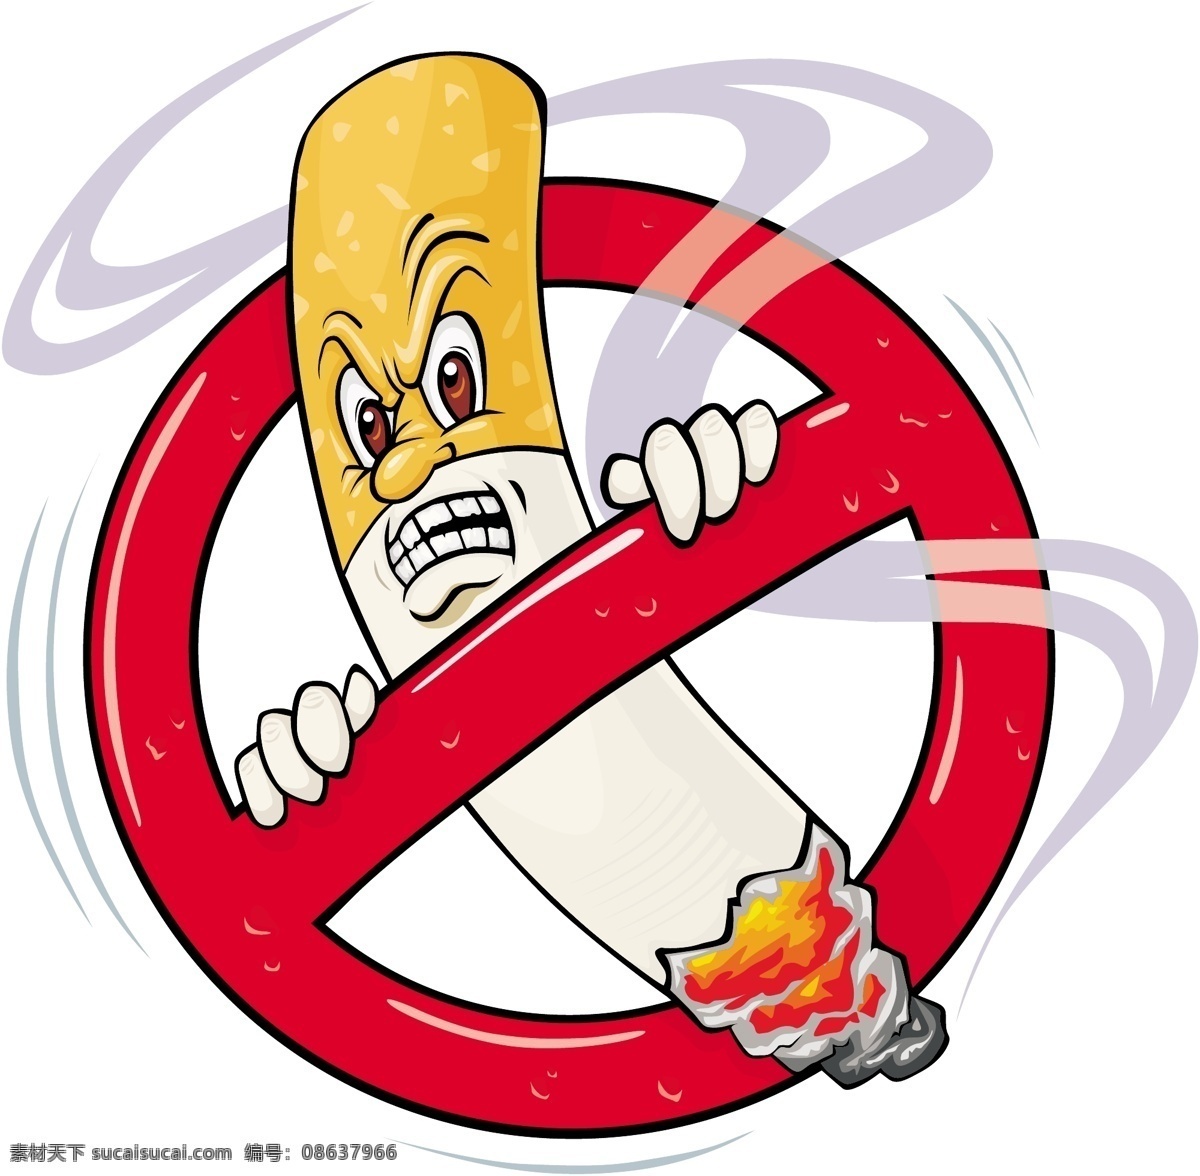 禁止吸烟图标 禁止吸烟 图标 卡通 吸烟 烟头 vi设计 矢量